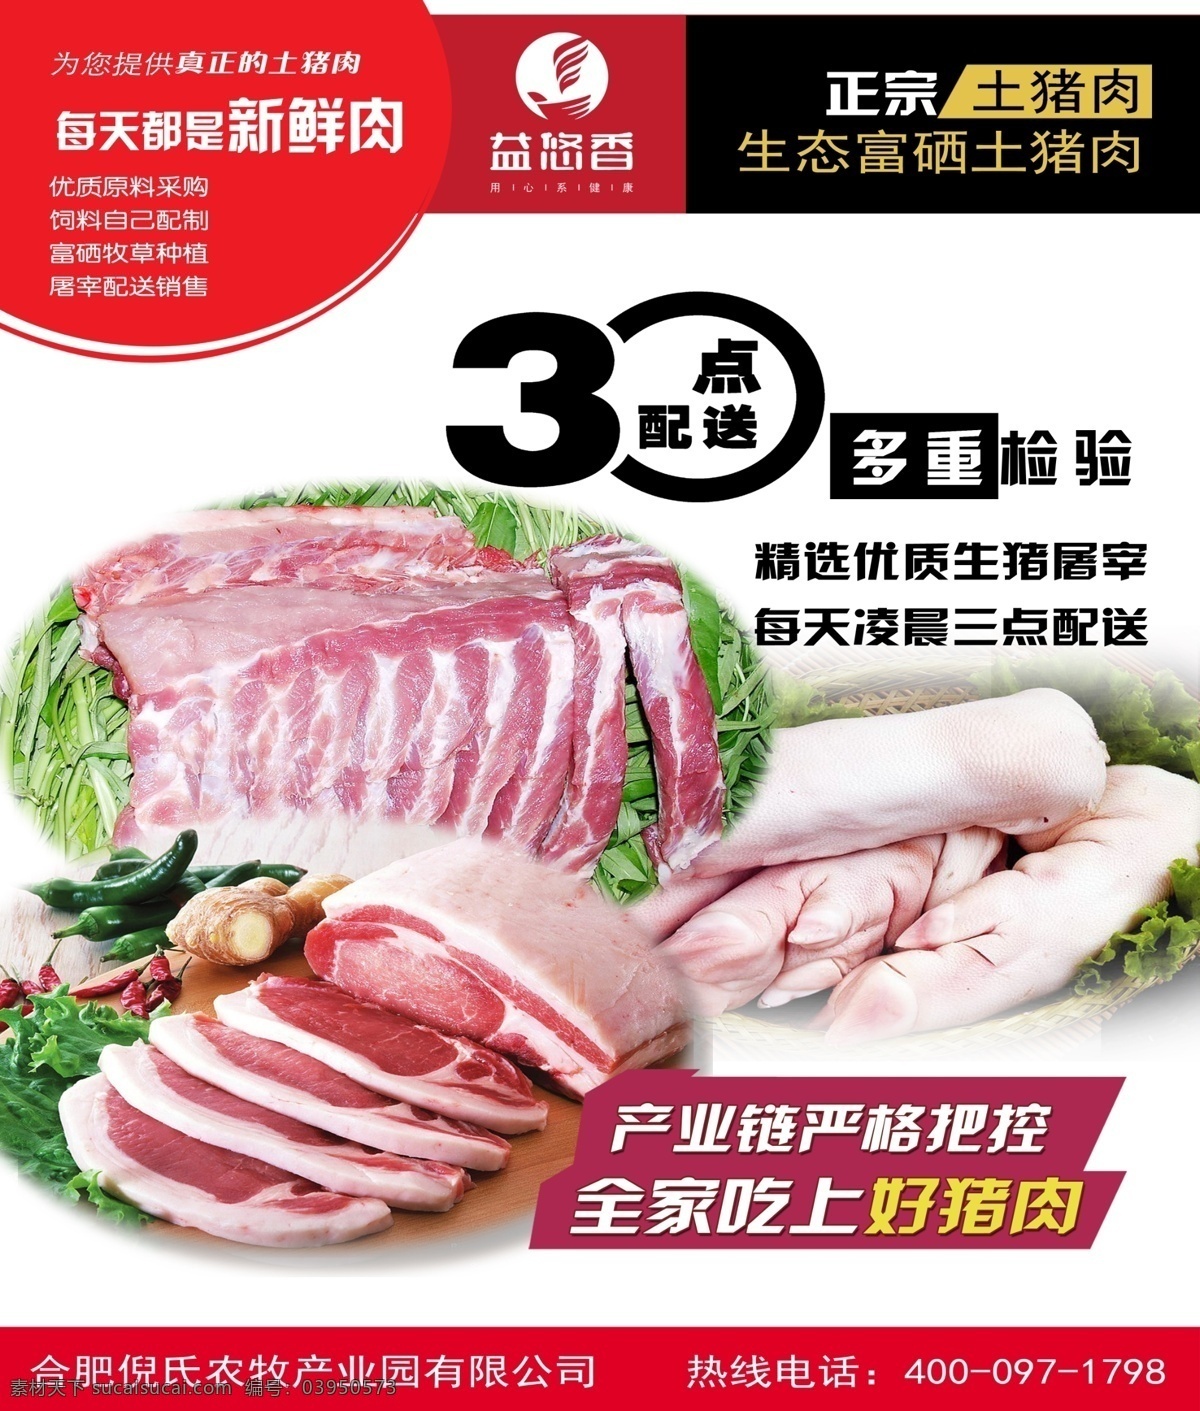 猪肉海报 公司单页 公司广告 公司介绍 猪肉 招贴设计